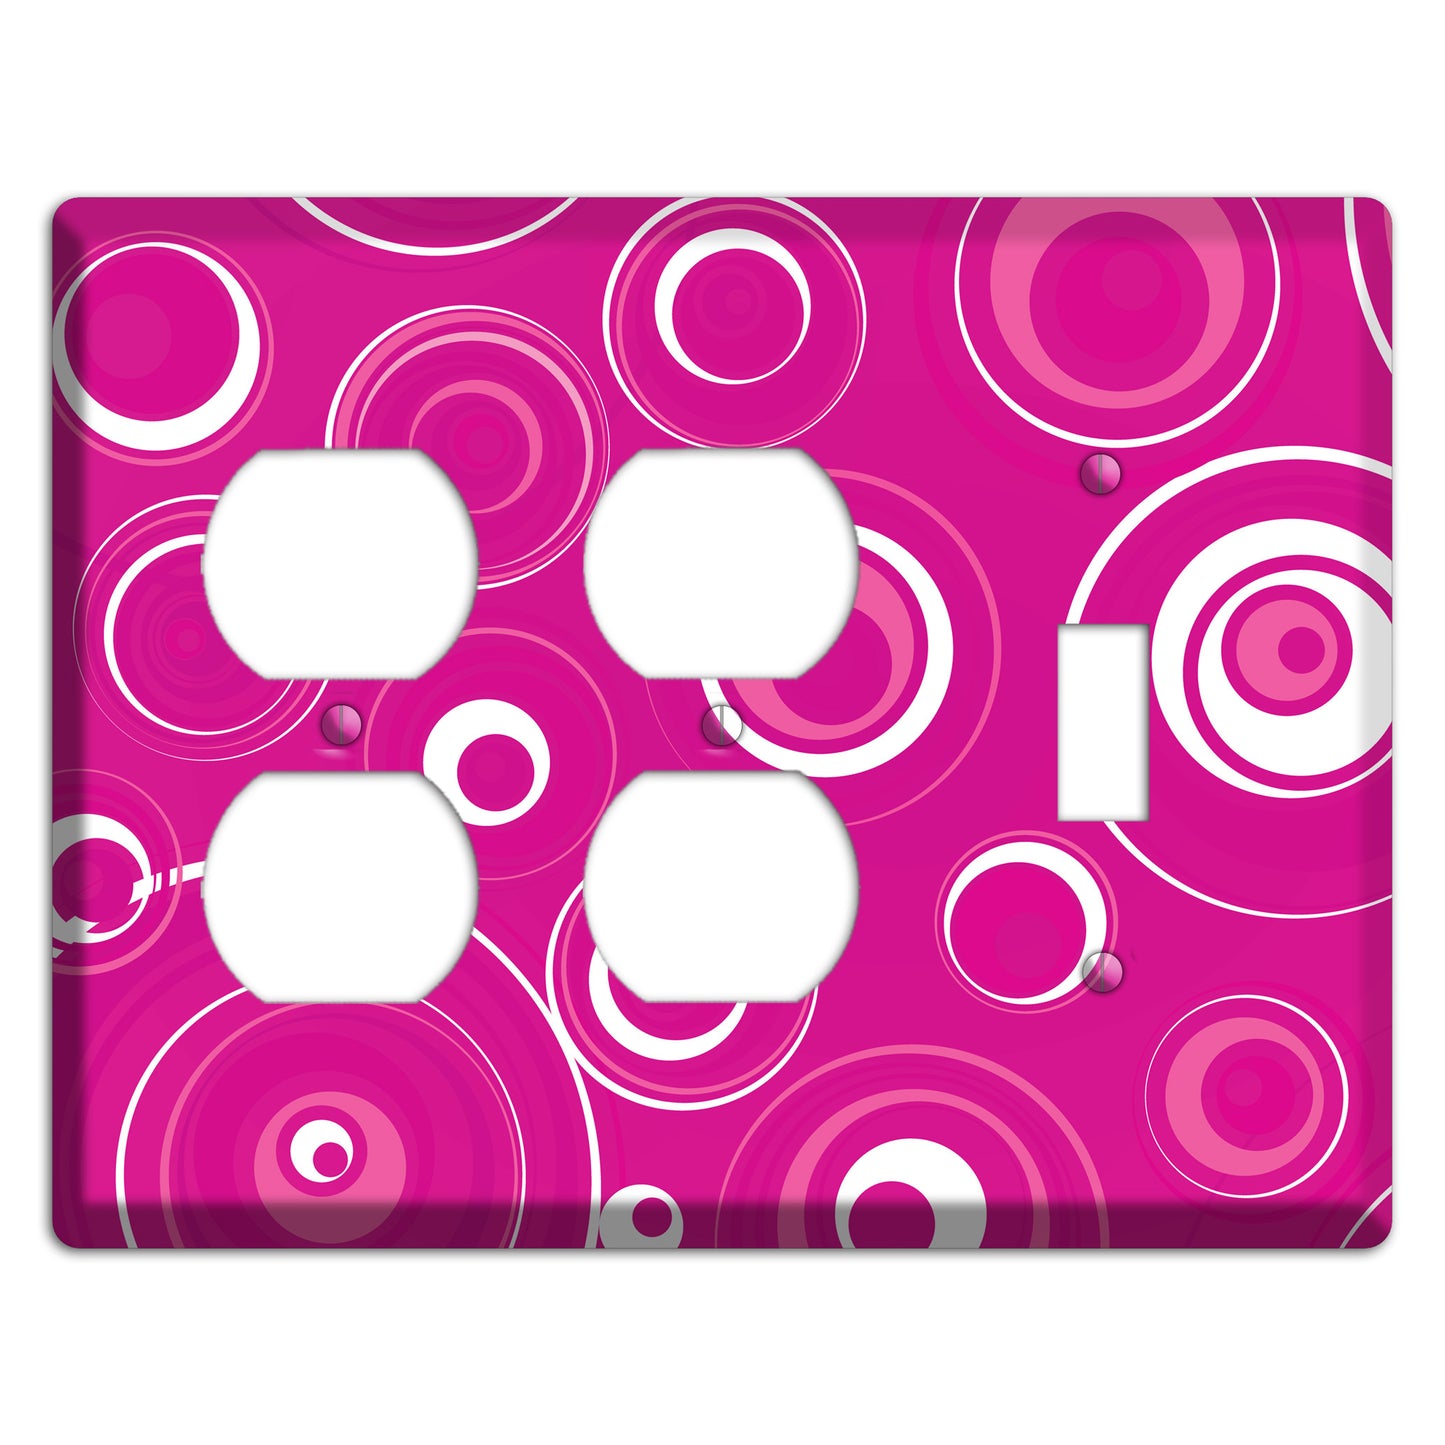 Dark Pink Circles 2 Duplex / Toggle Wallplate